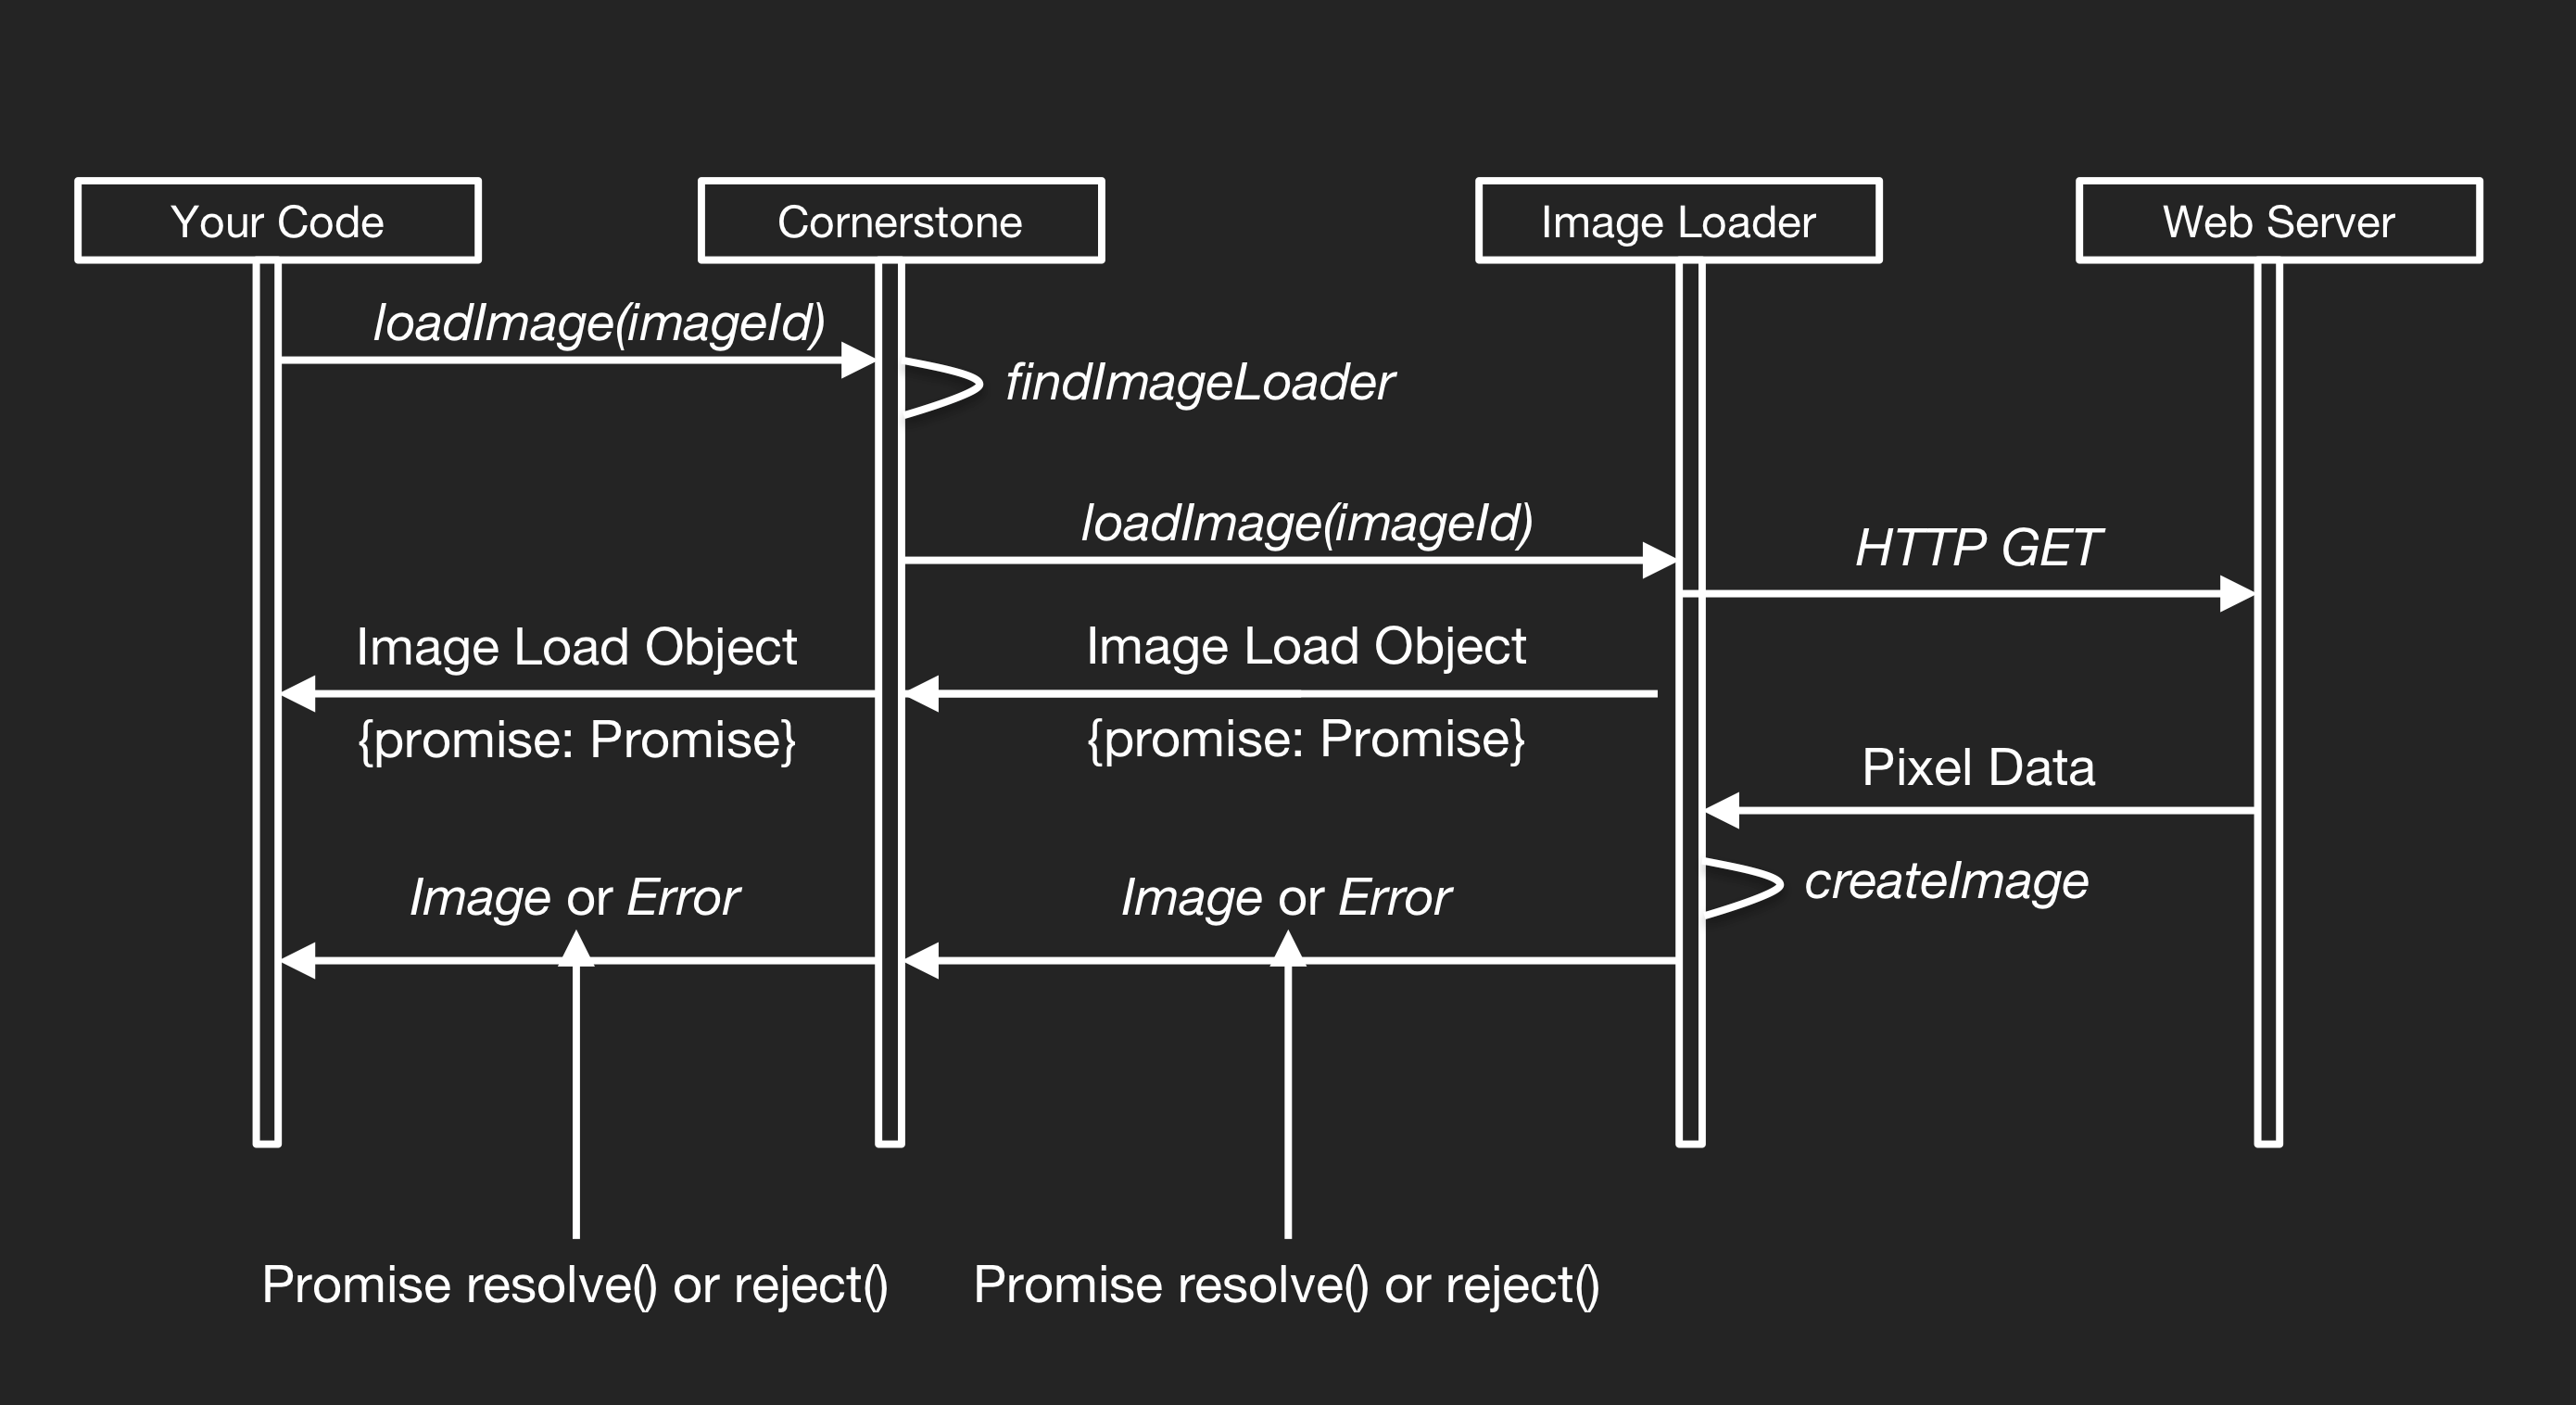 Image Loader workflow